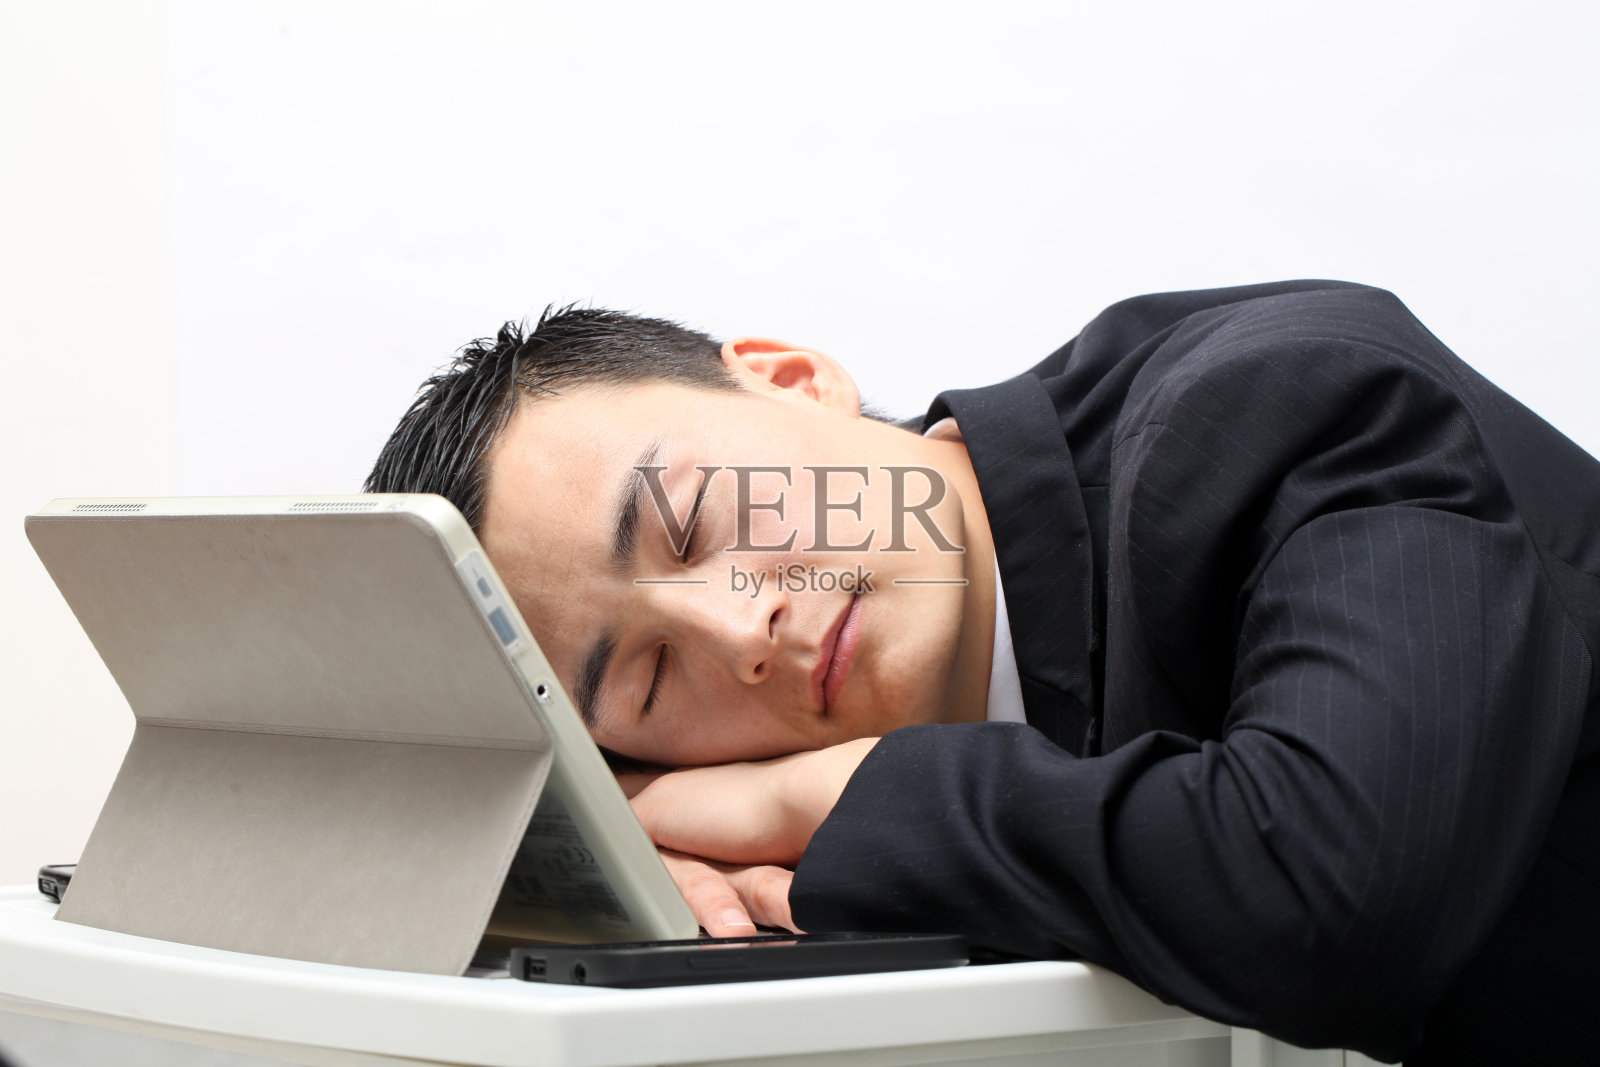 一名男子睡觉的照片照片摄影图片_ID:414089501-Veer图库